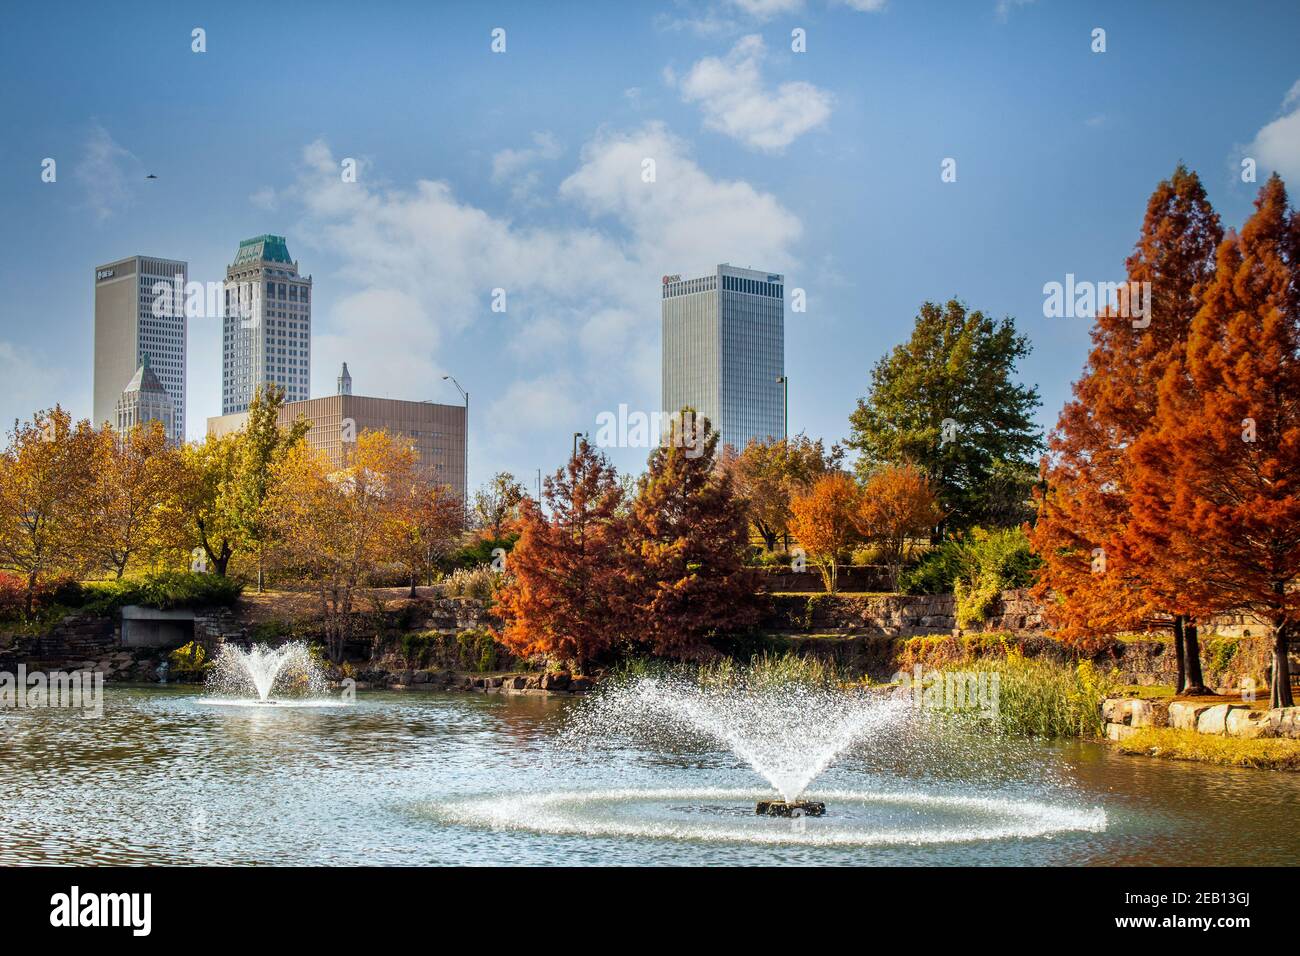 11-16 2020 - Tulsa USA - vue depuis Central Park Du centre-ville de Tulsa, Oklahoma, le jour d'automne avec des couleurs vives feuillage et lac et fontaines dans le passé Banque D'Images